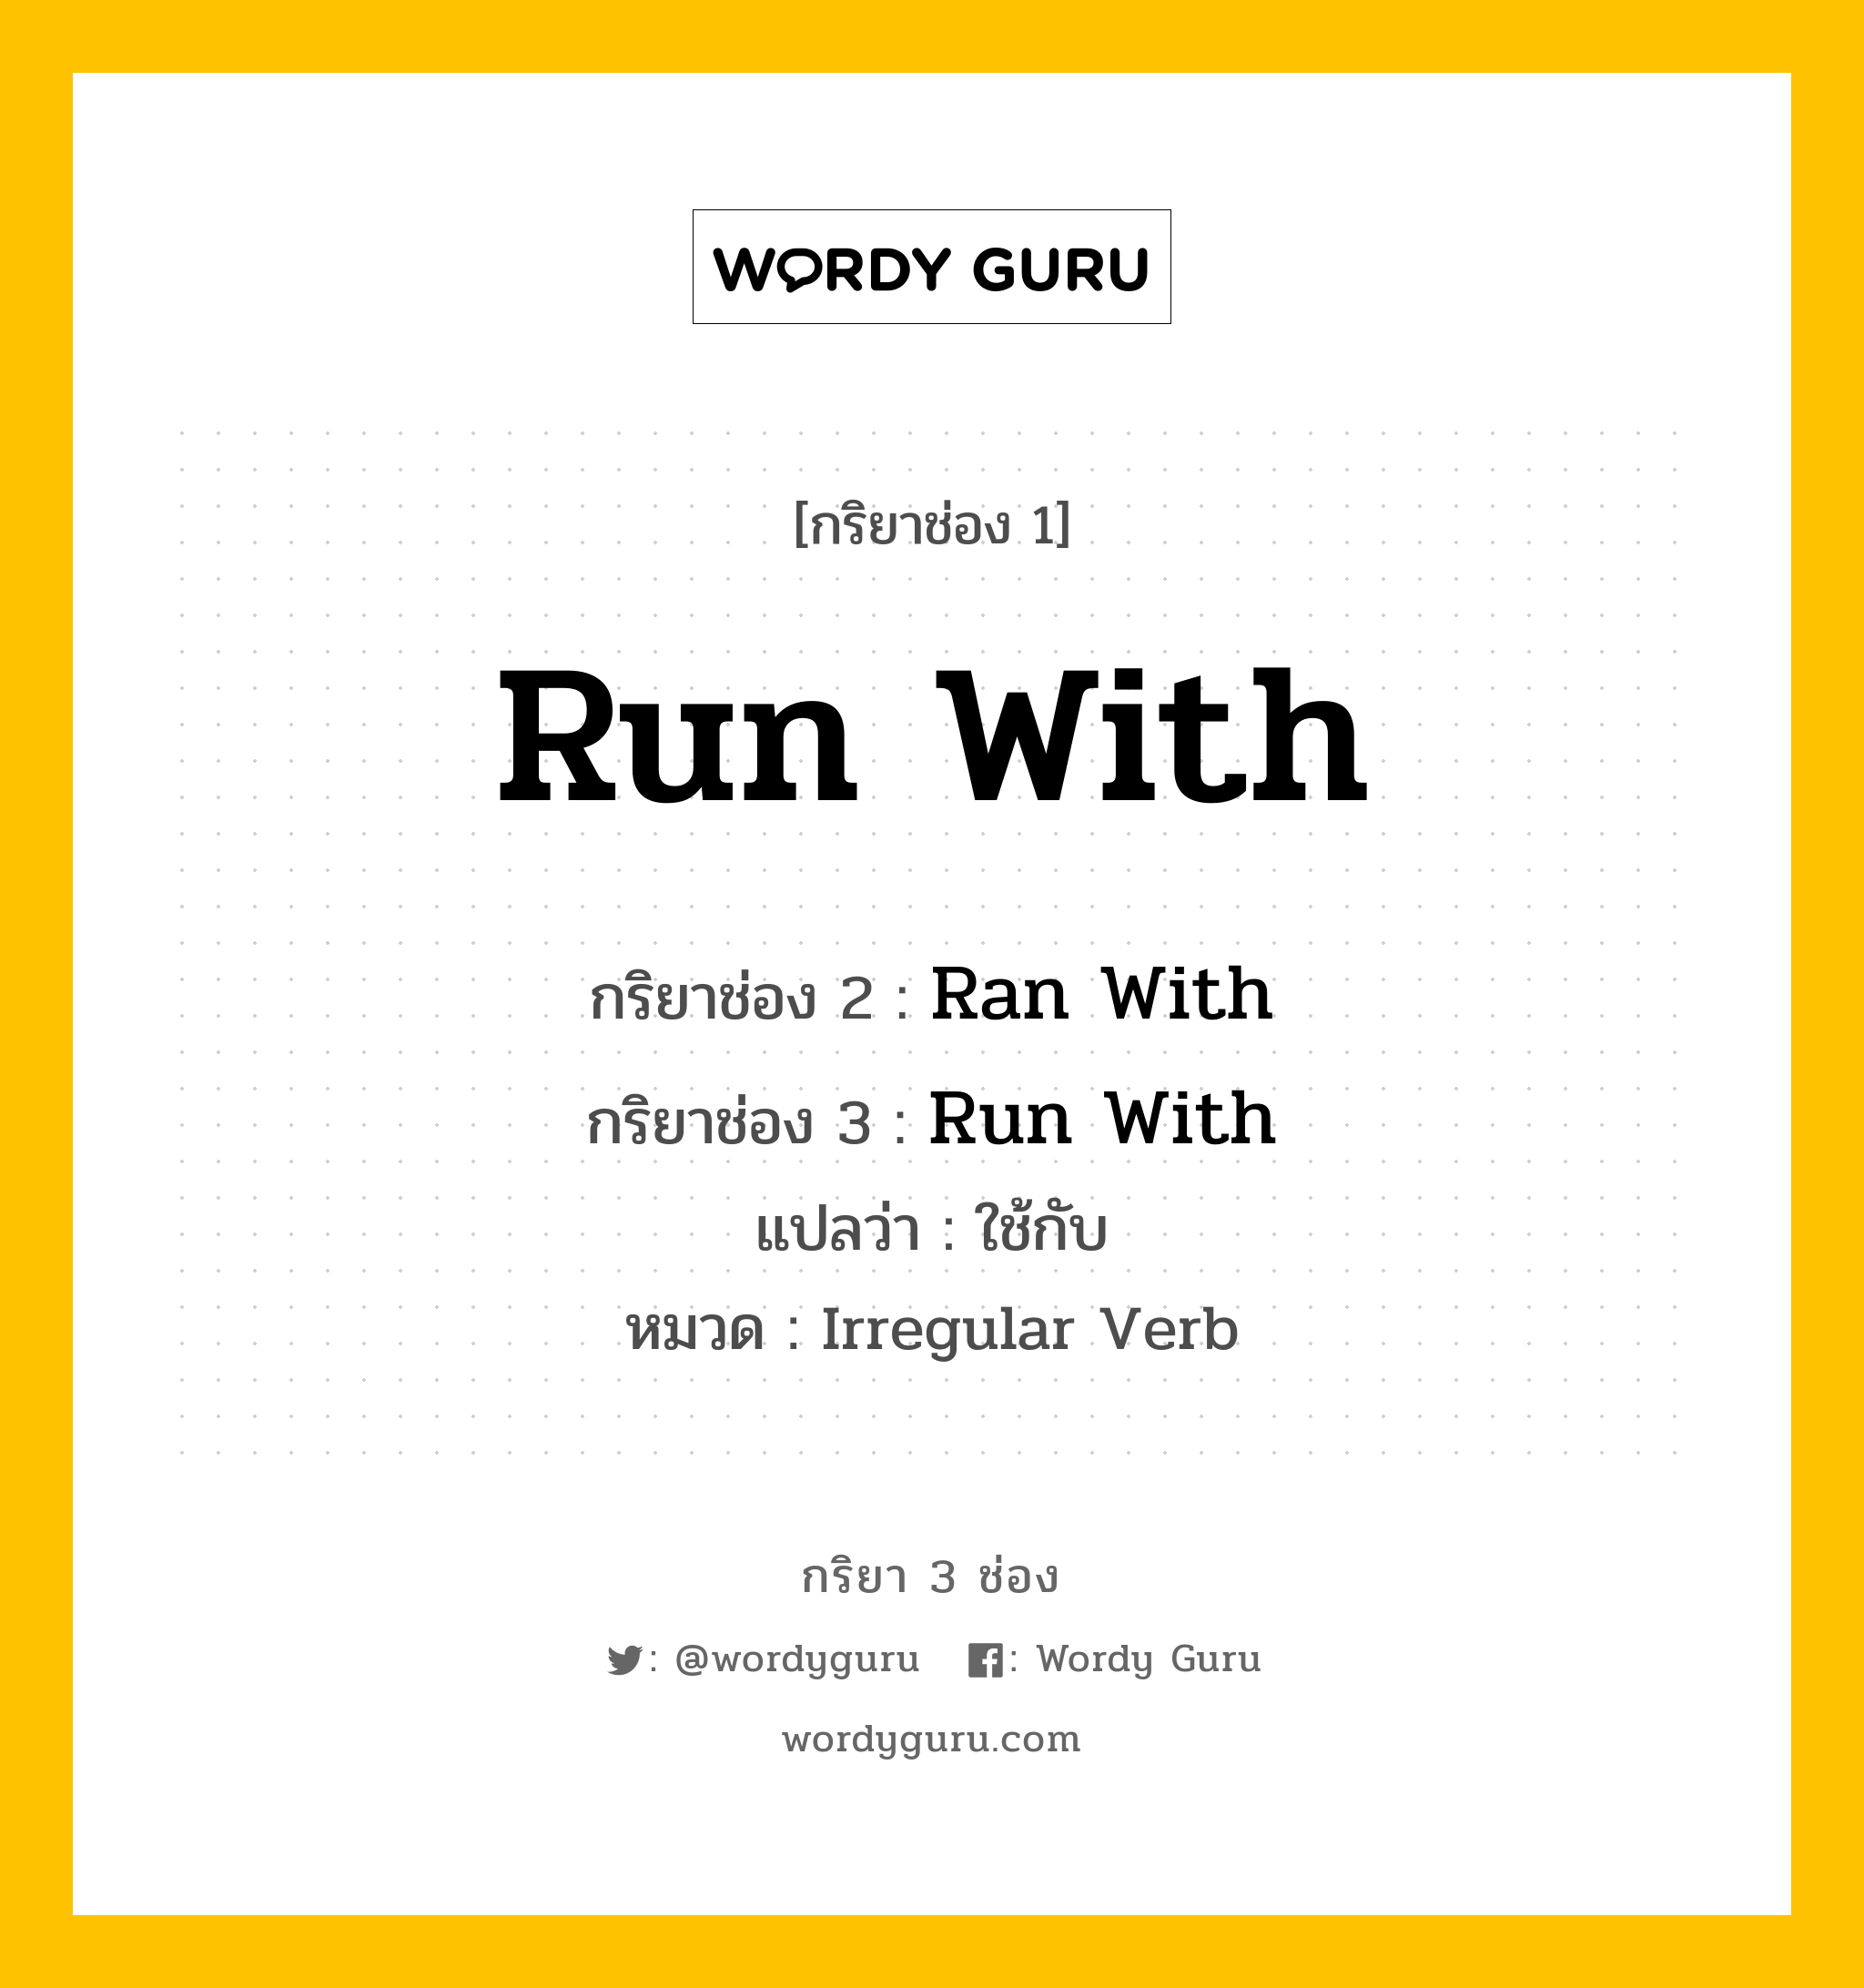 กริยา 3 ช่อง: Run With ช่อง 2 Run With ช่อง 3 คืออะไร, กริยาช่อง 1 Run With กริยาช่อง 2 Ran With กริยาช่อง 3 Run With แปลว่า ใช้กับ หมวด Irregular Verb หมวด Irregular Verb